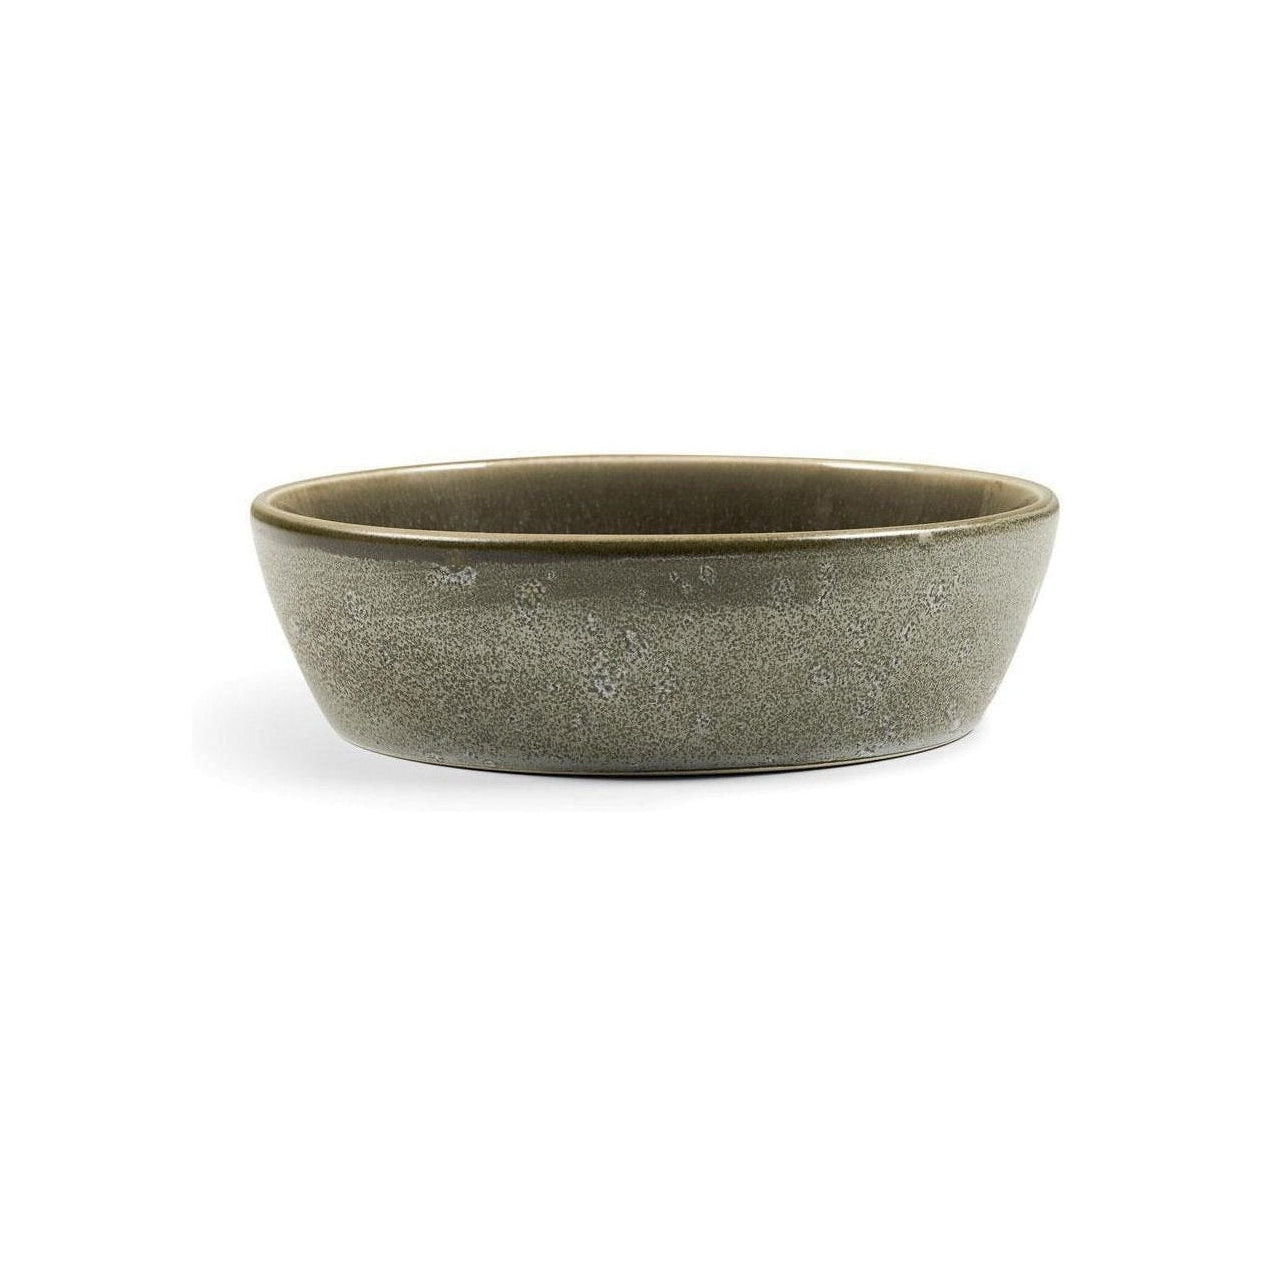 Bitz Soup Bowl, grigio/marrone scuro, Ø 18 cm